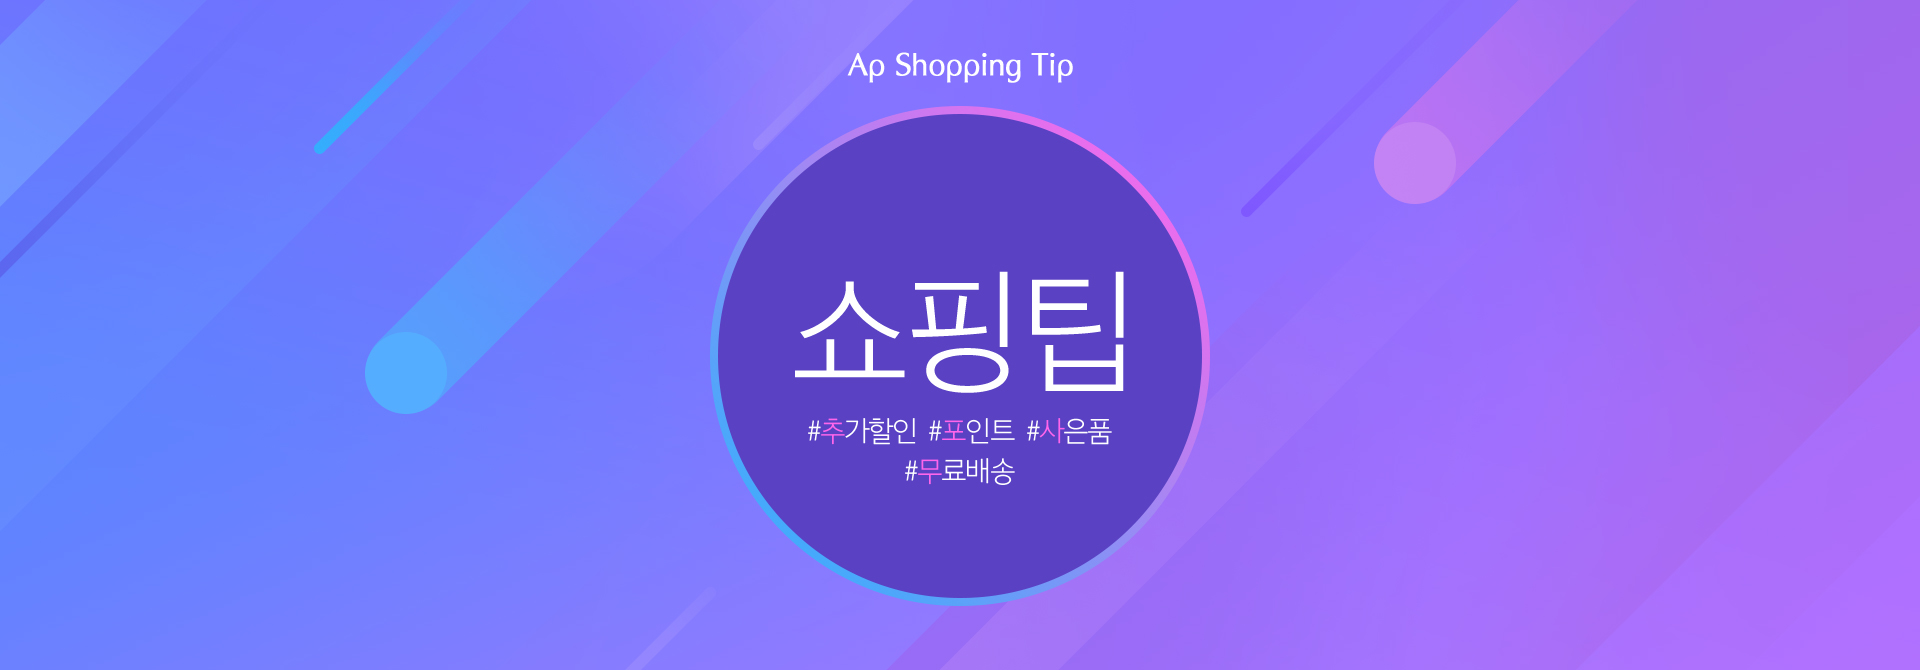 Ap Shopping Tip 쇼핑팁 : 추가할인, 포인트, 사은품, 무료배송